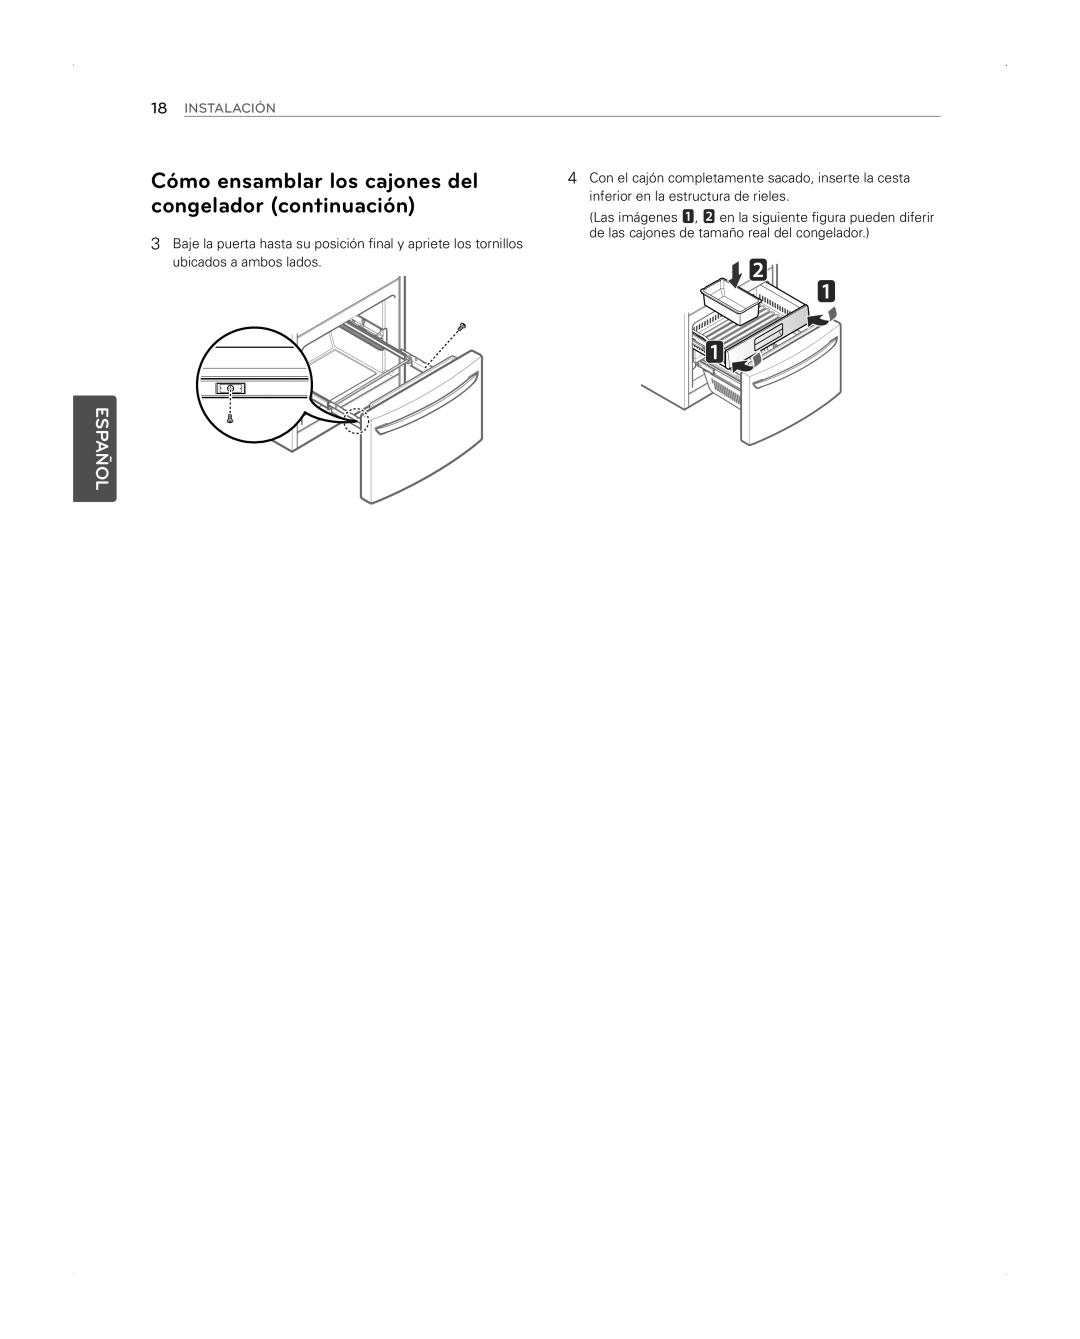 LG Electronics LFX31945ST owner manual congelador continuación, Cómo ensamblar los cajones del, Español, Instalación 